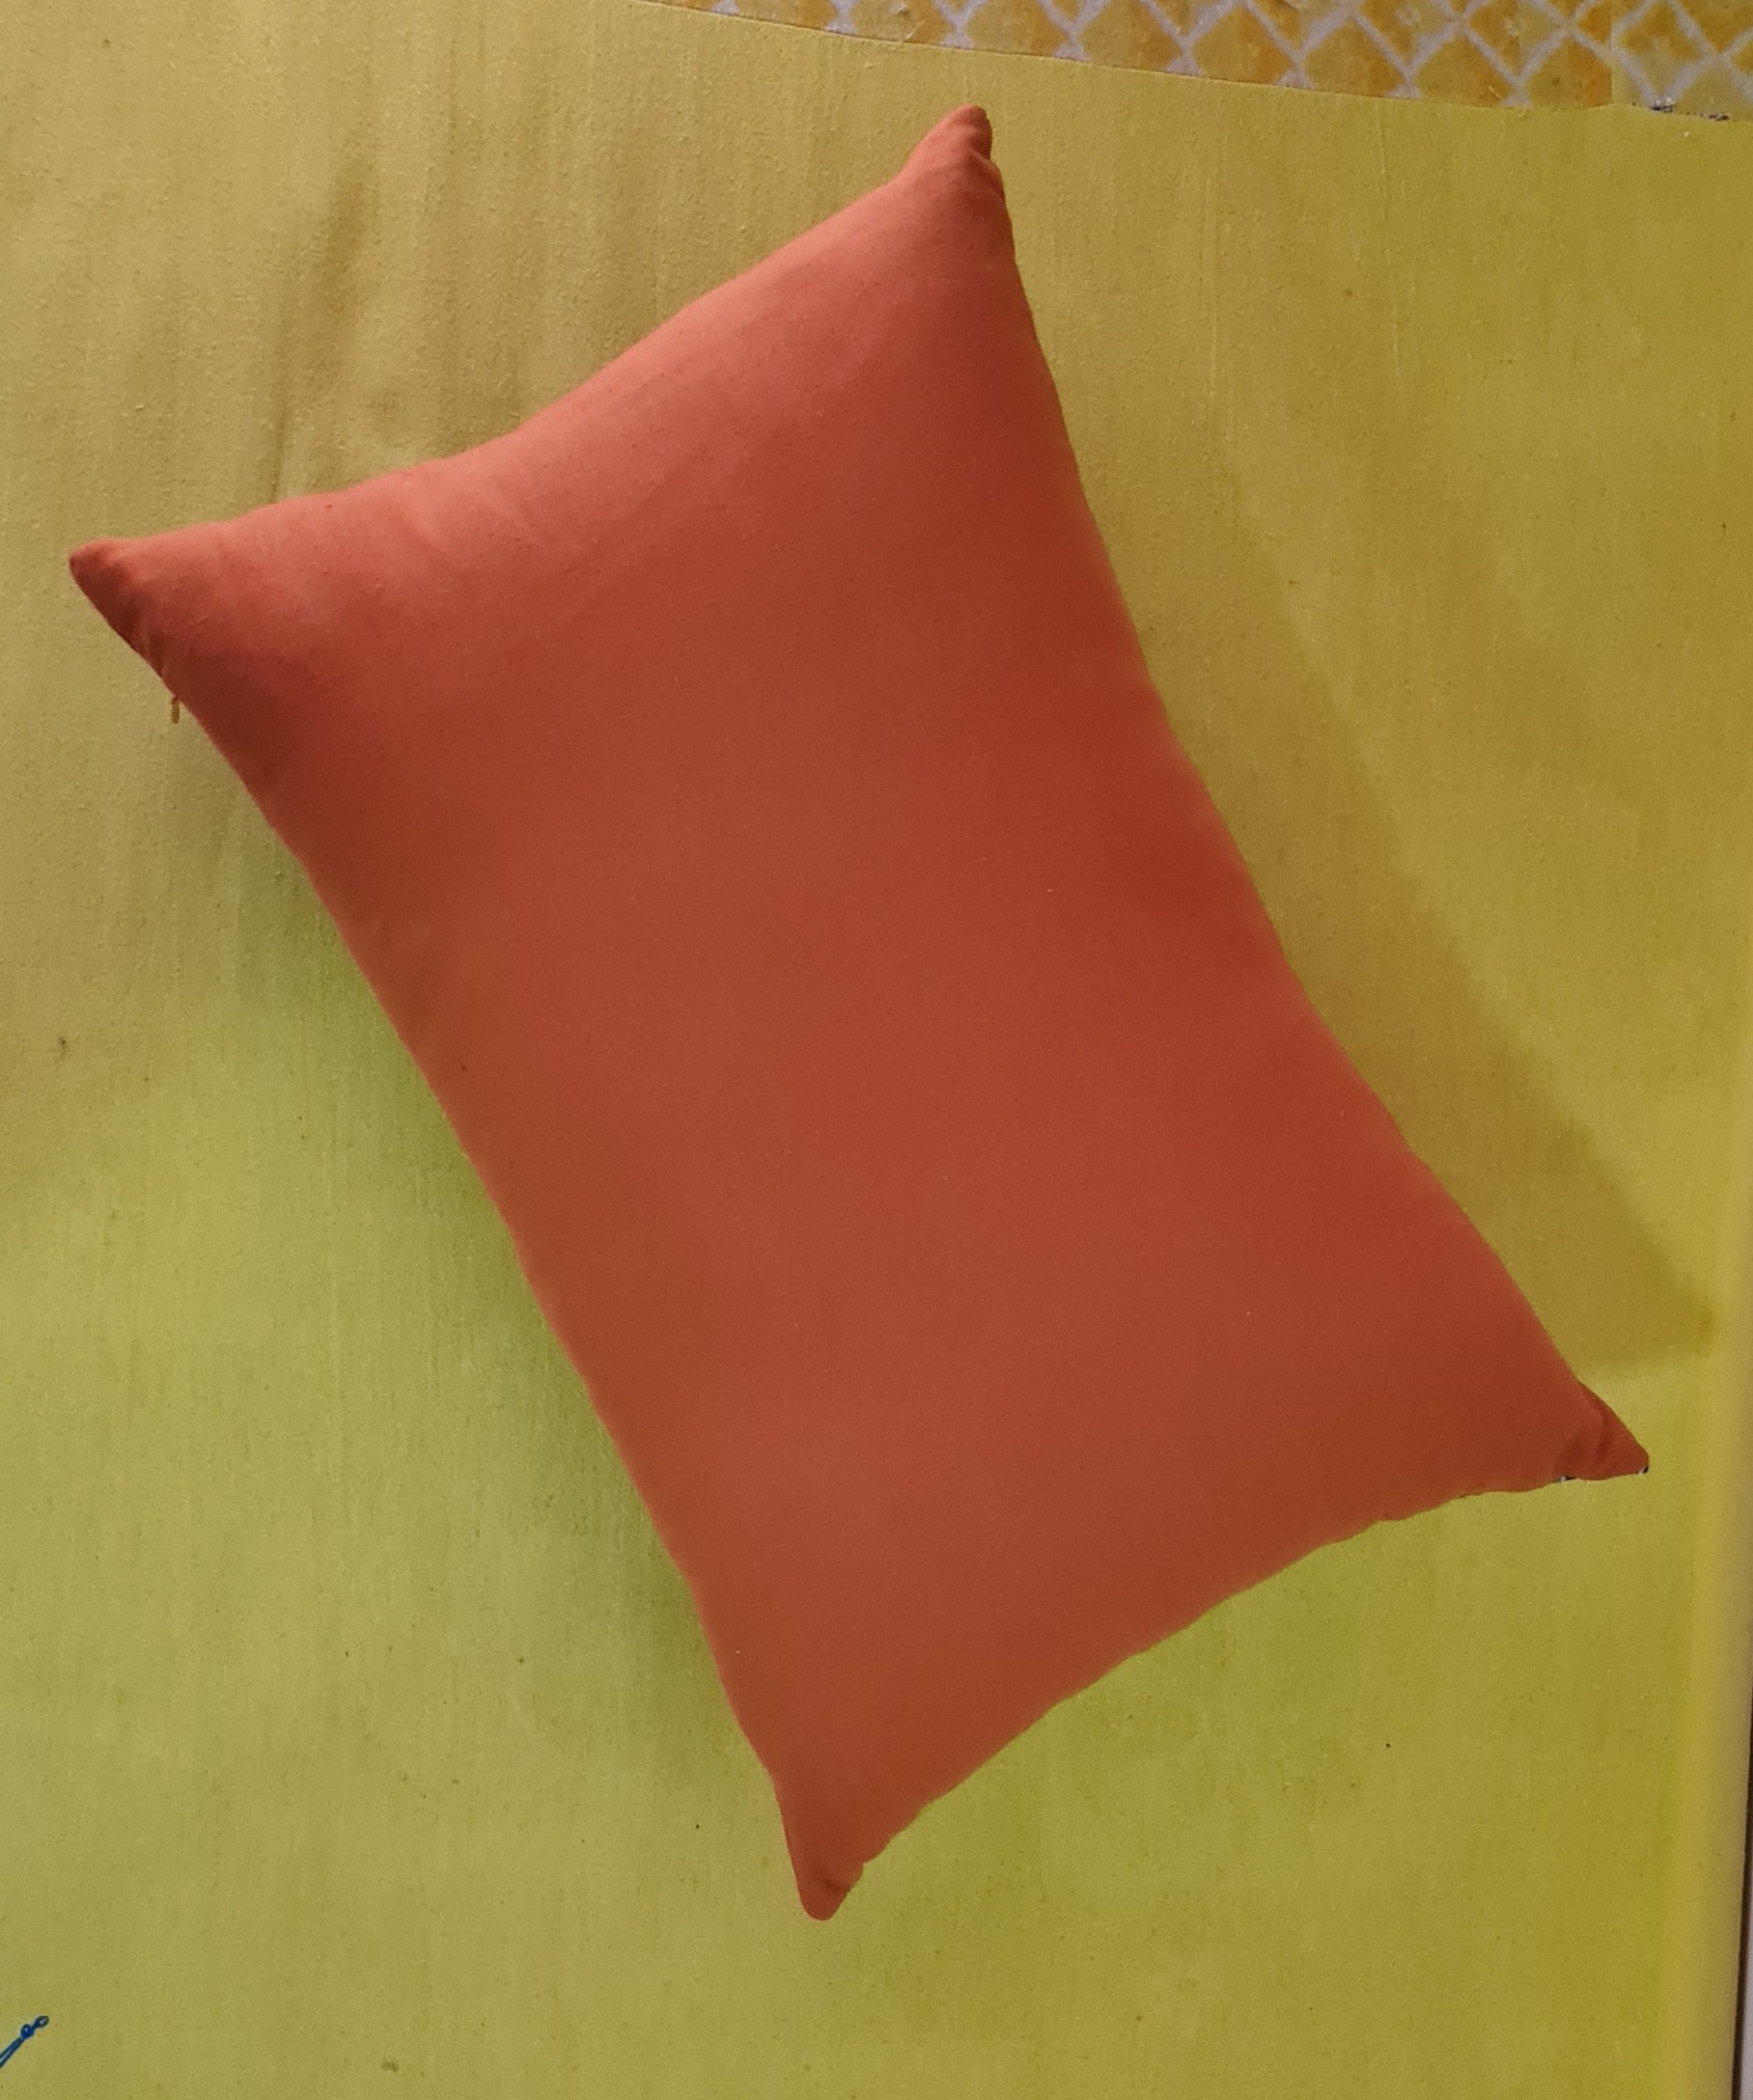 ula decorative pillow